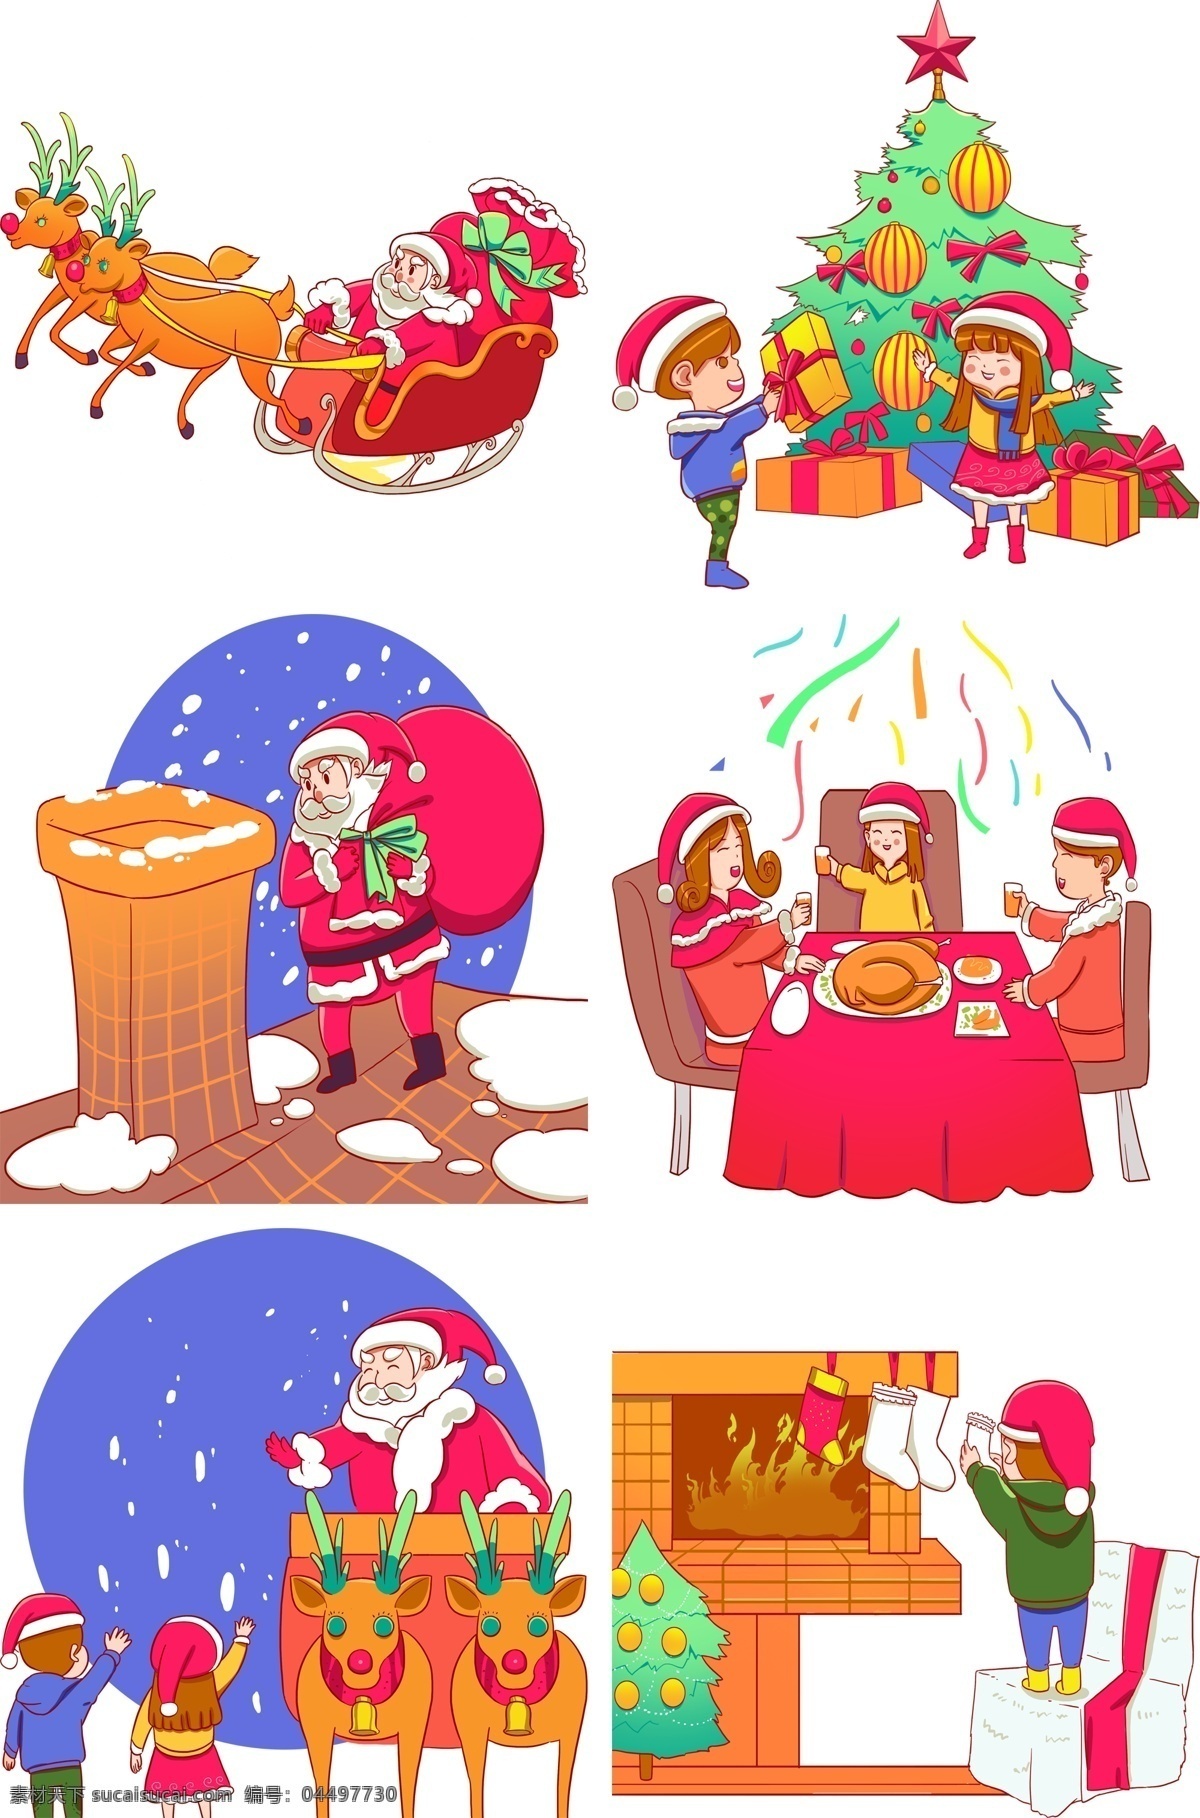 圣诞节 圣诞老人 圣诞树 孩子 圣诞 故事 冬季 冬天 装饰 麋鹿 雪橇车 拉雪橇 圣诞礼物 传统节日 送礼物 飞驰 卡通形象